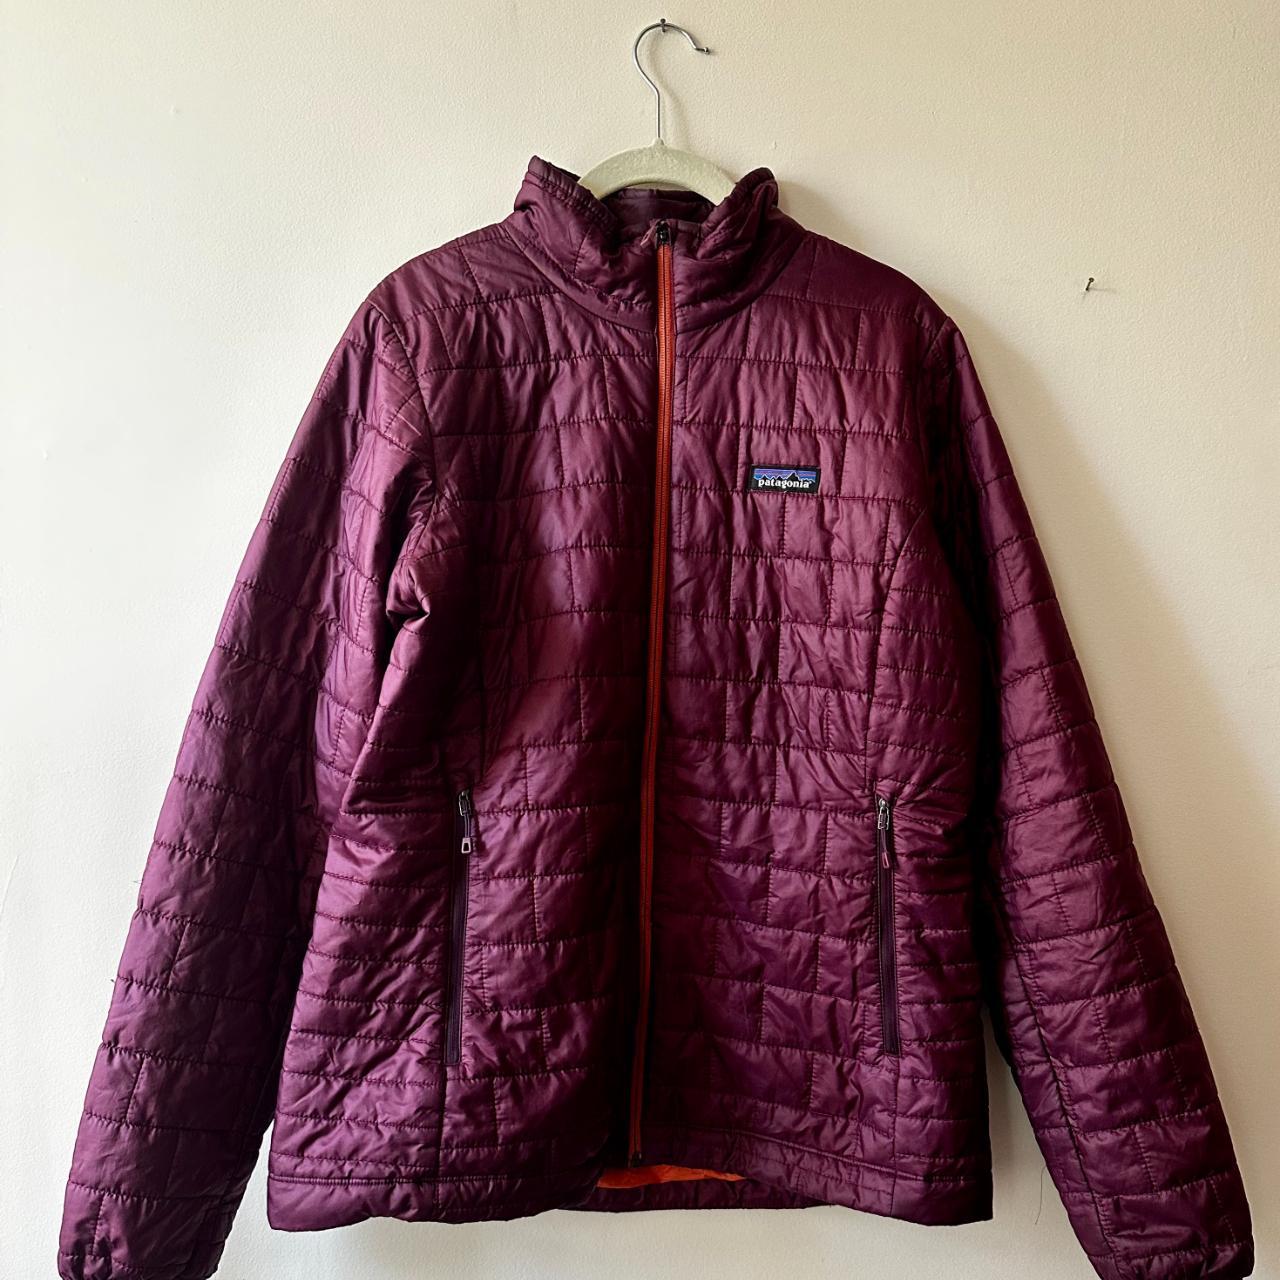 Patagonia - Large Women's Nano Puff Jacket. Burgandy. - Depop